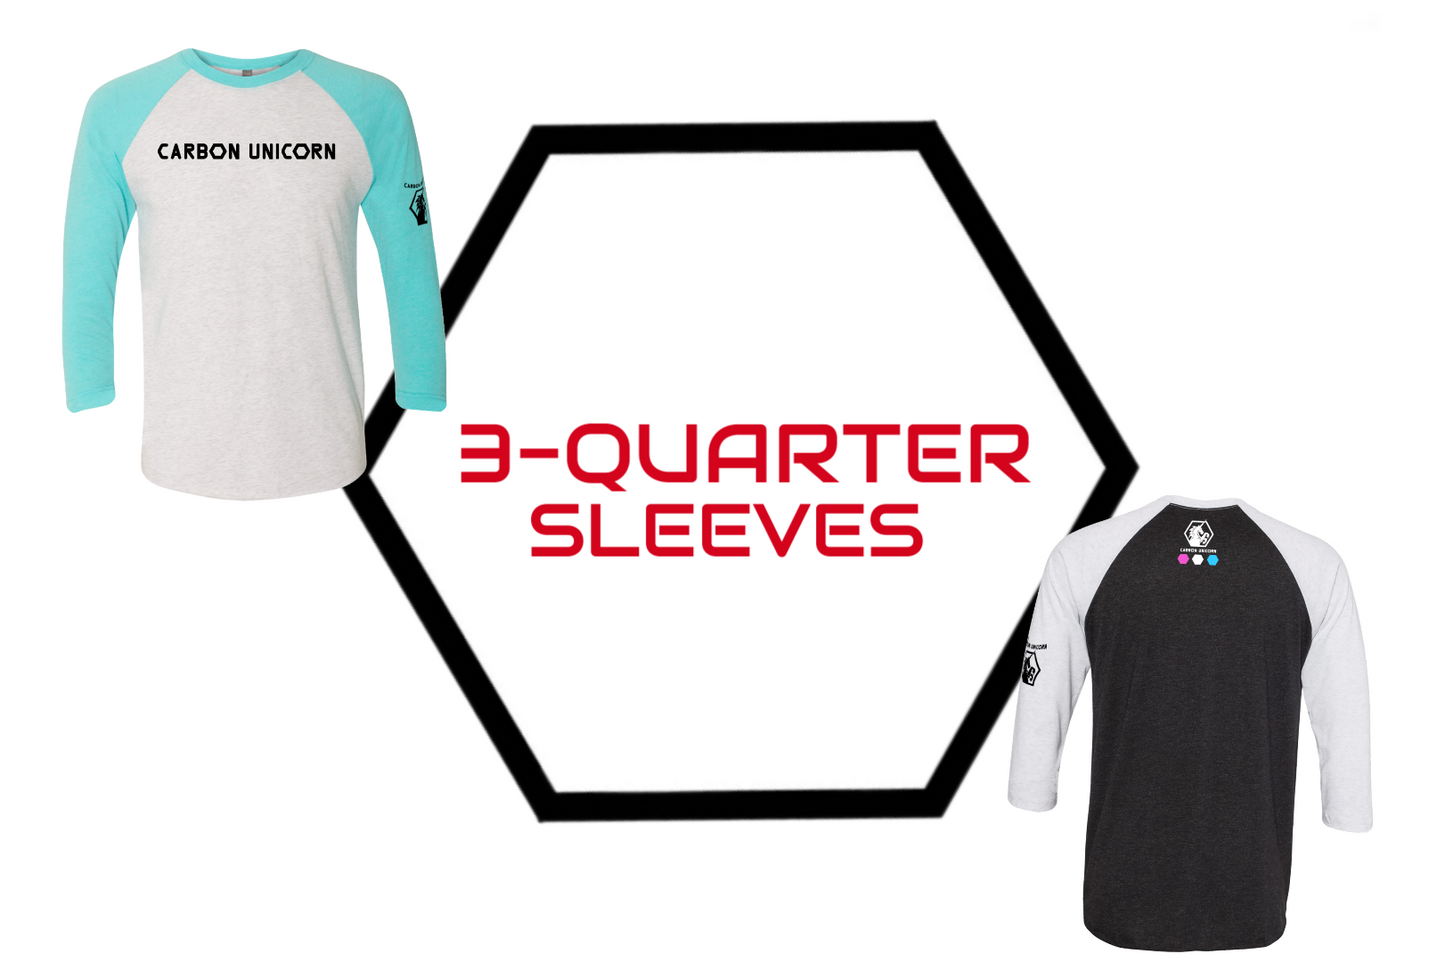 3-Quarter Sleeves